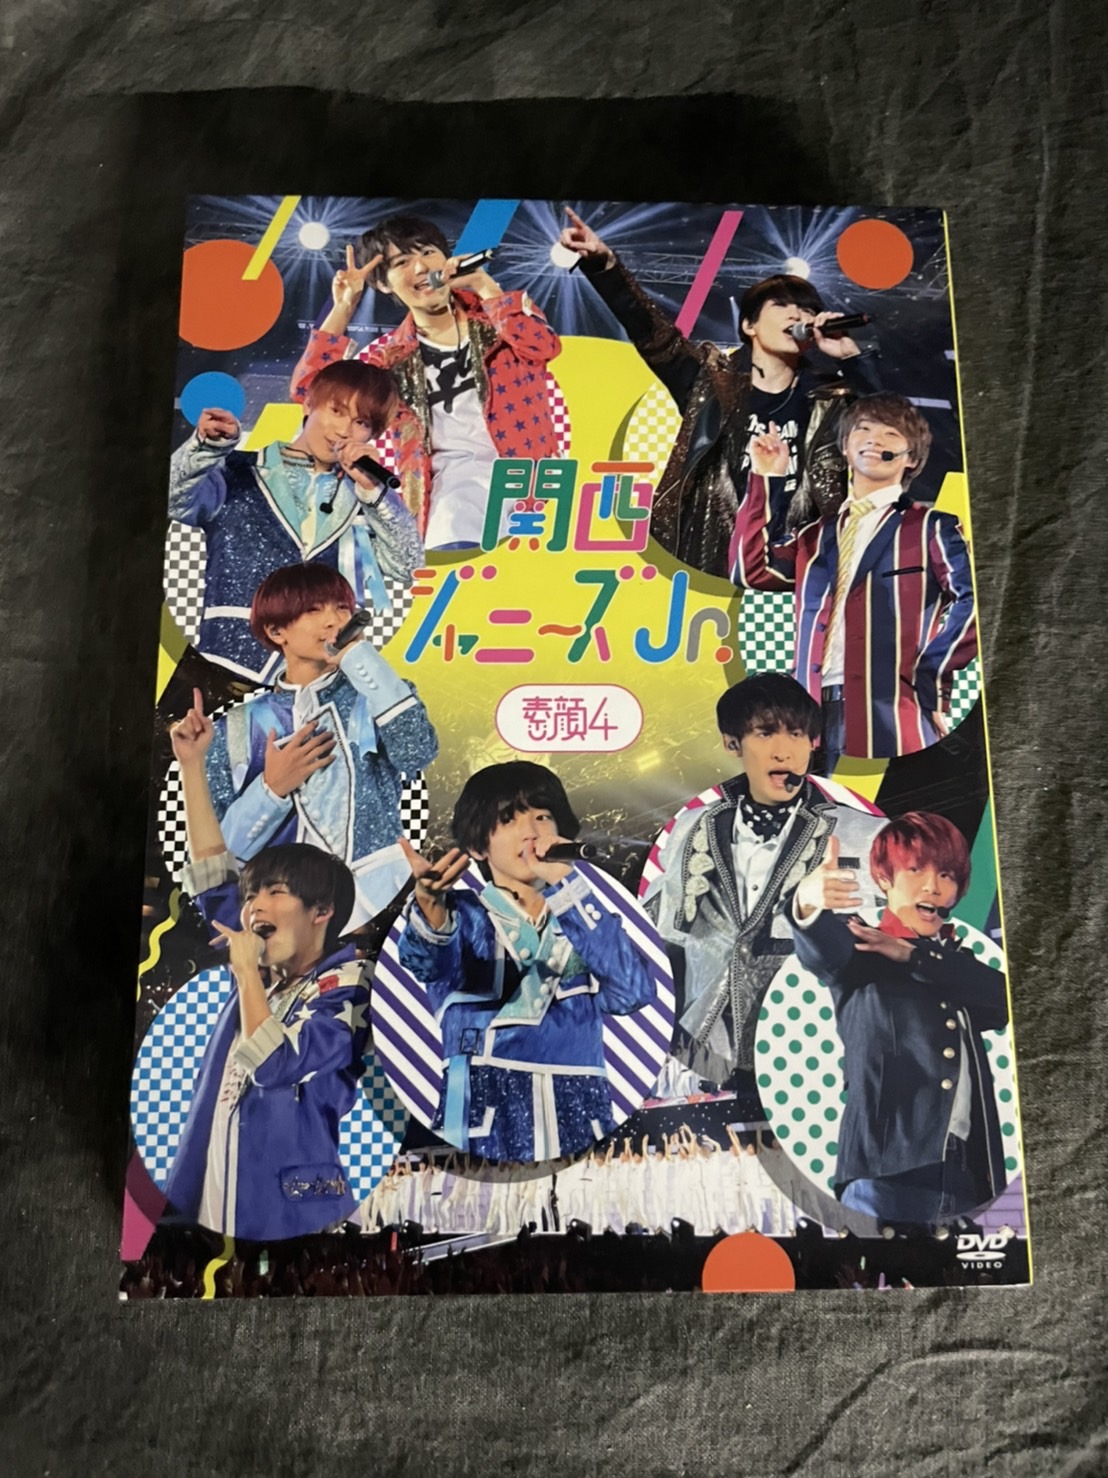 関西ジャニーズJr. 素顔4 コンサートDVD - DVD/ブルーレイ